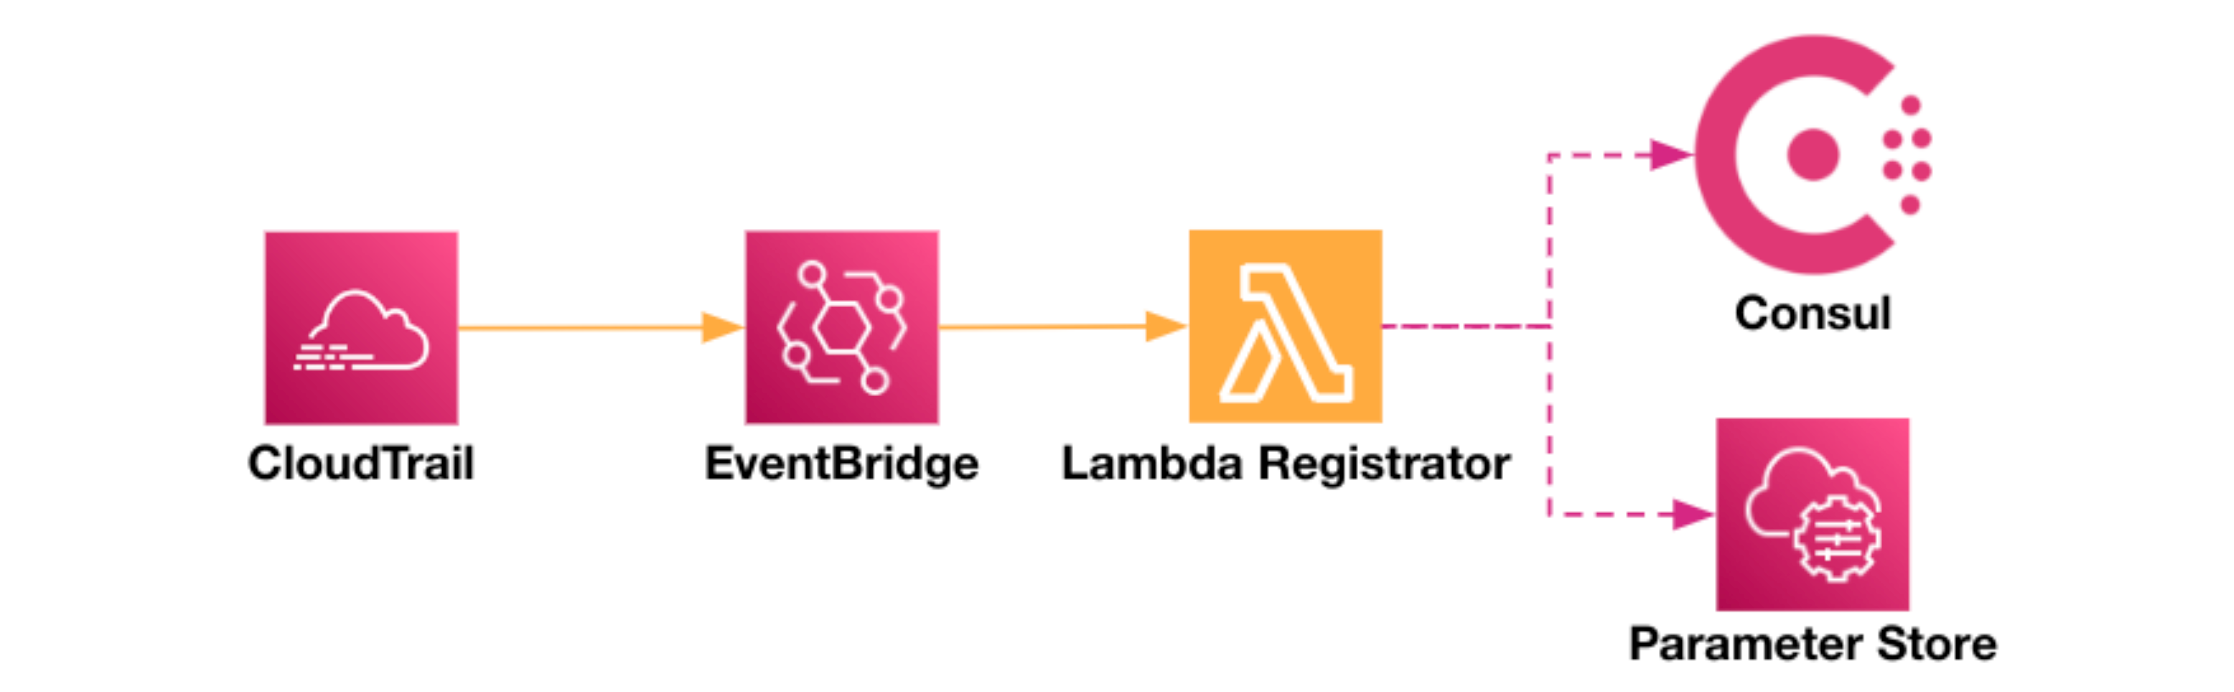 Lambda registration in Consul